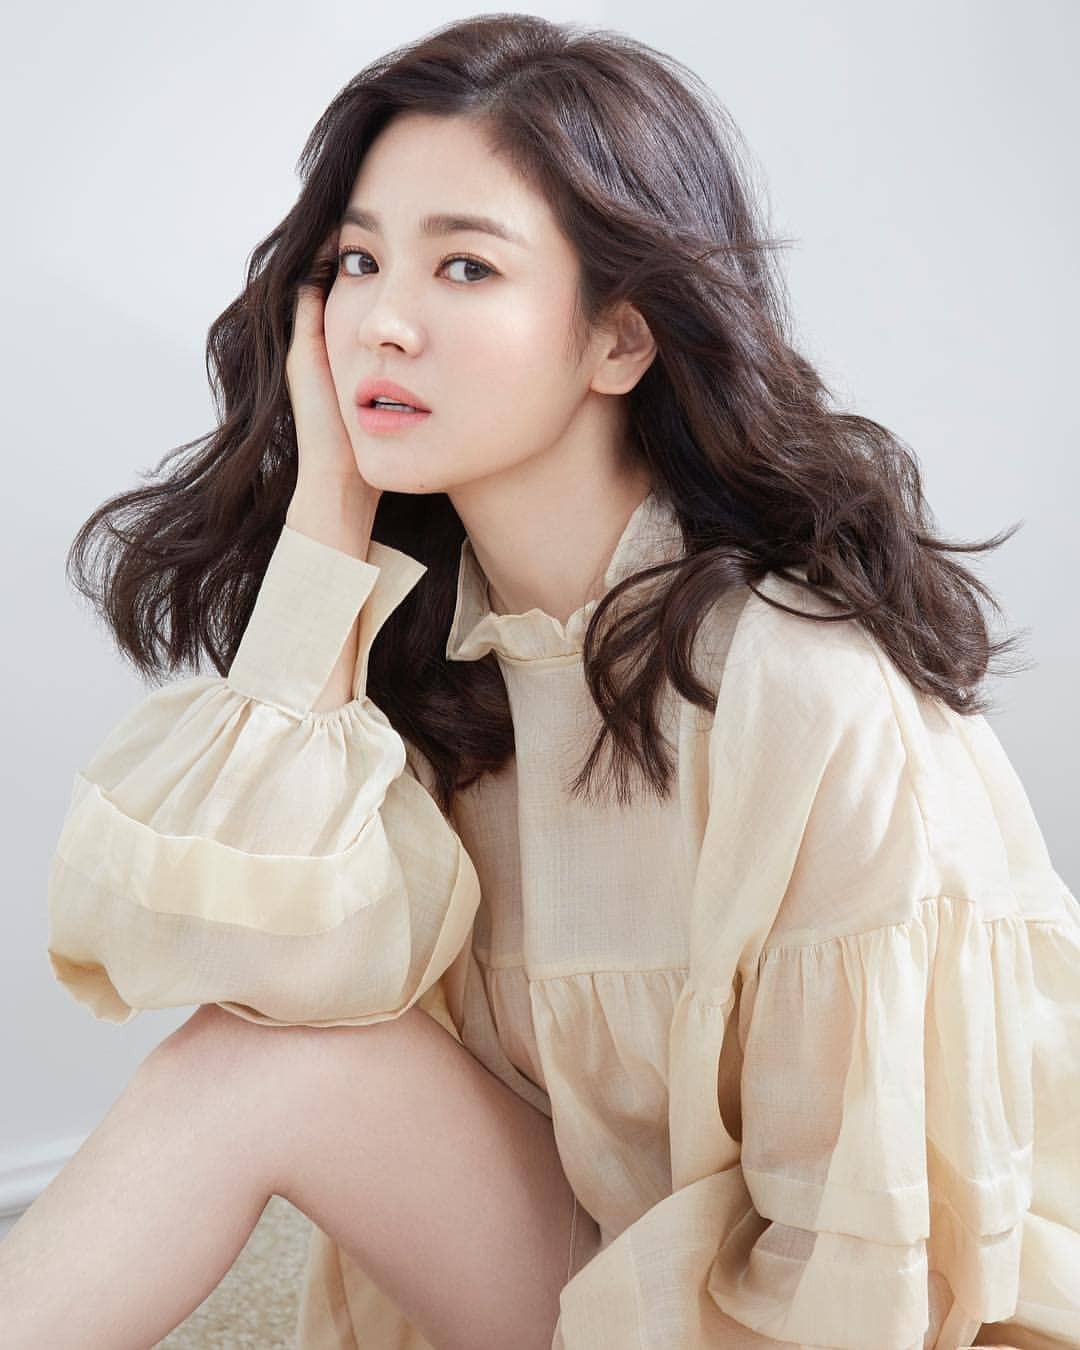 Những thị phi ồn ào khiến Song Hye Kyo đánh mất hình ảnh ngọc nữ trong mắt công chúng-4